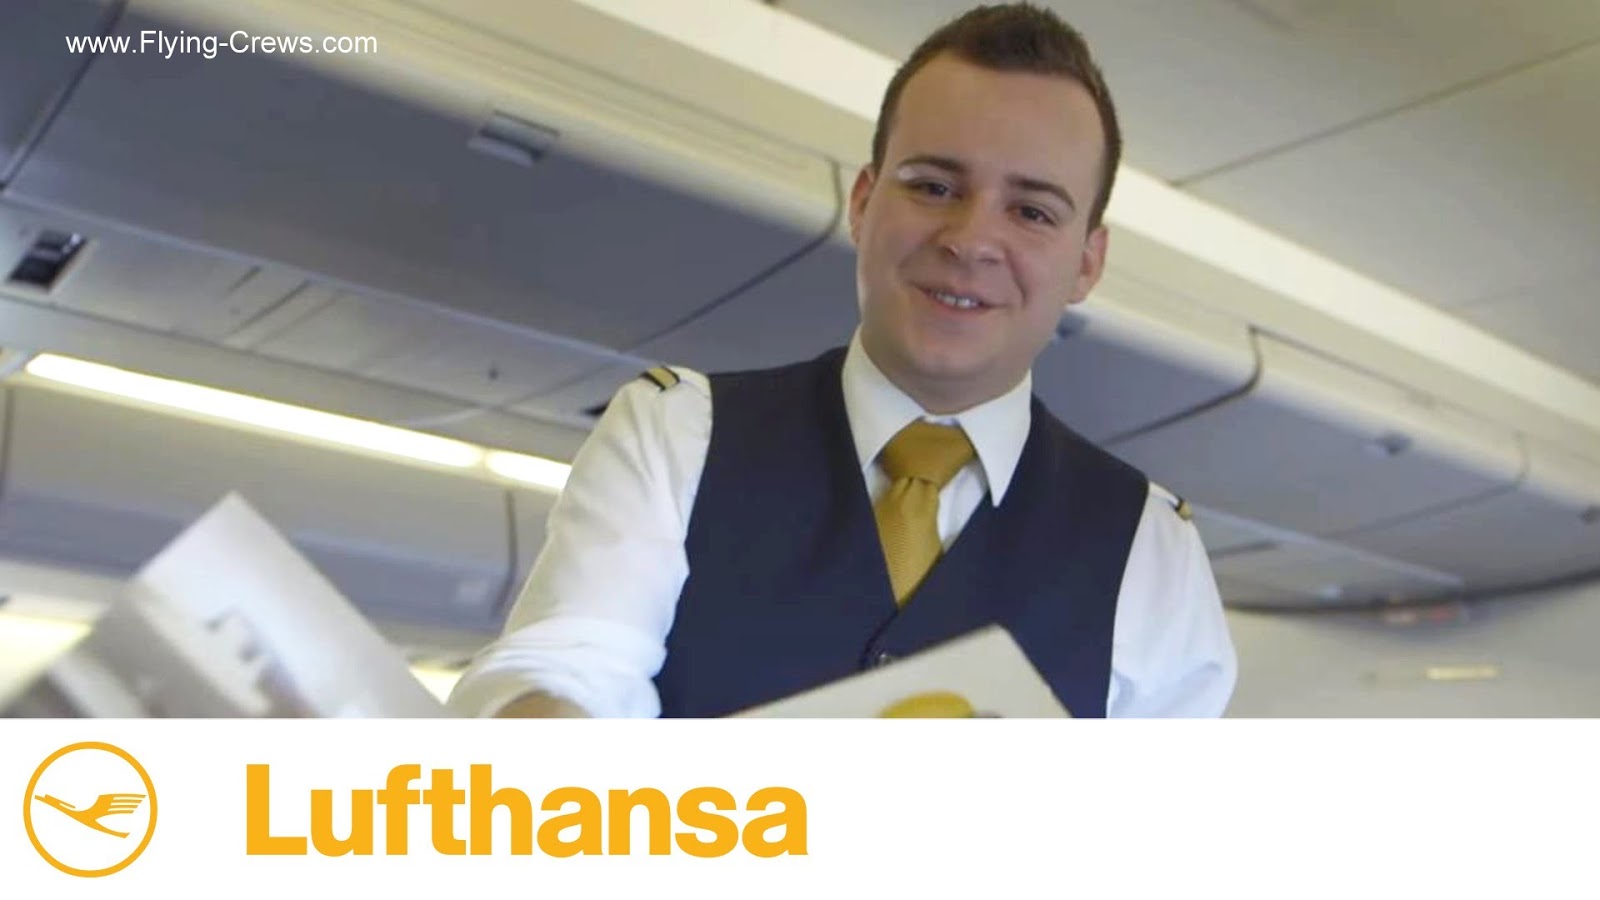 relieve envelope Inheritance Flight Attendant Lufthansa Airlines Berlin